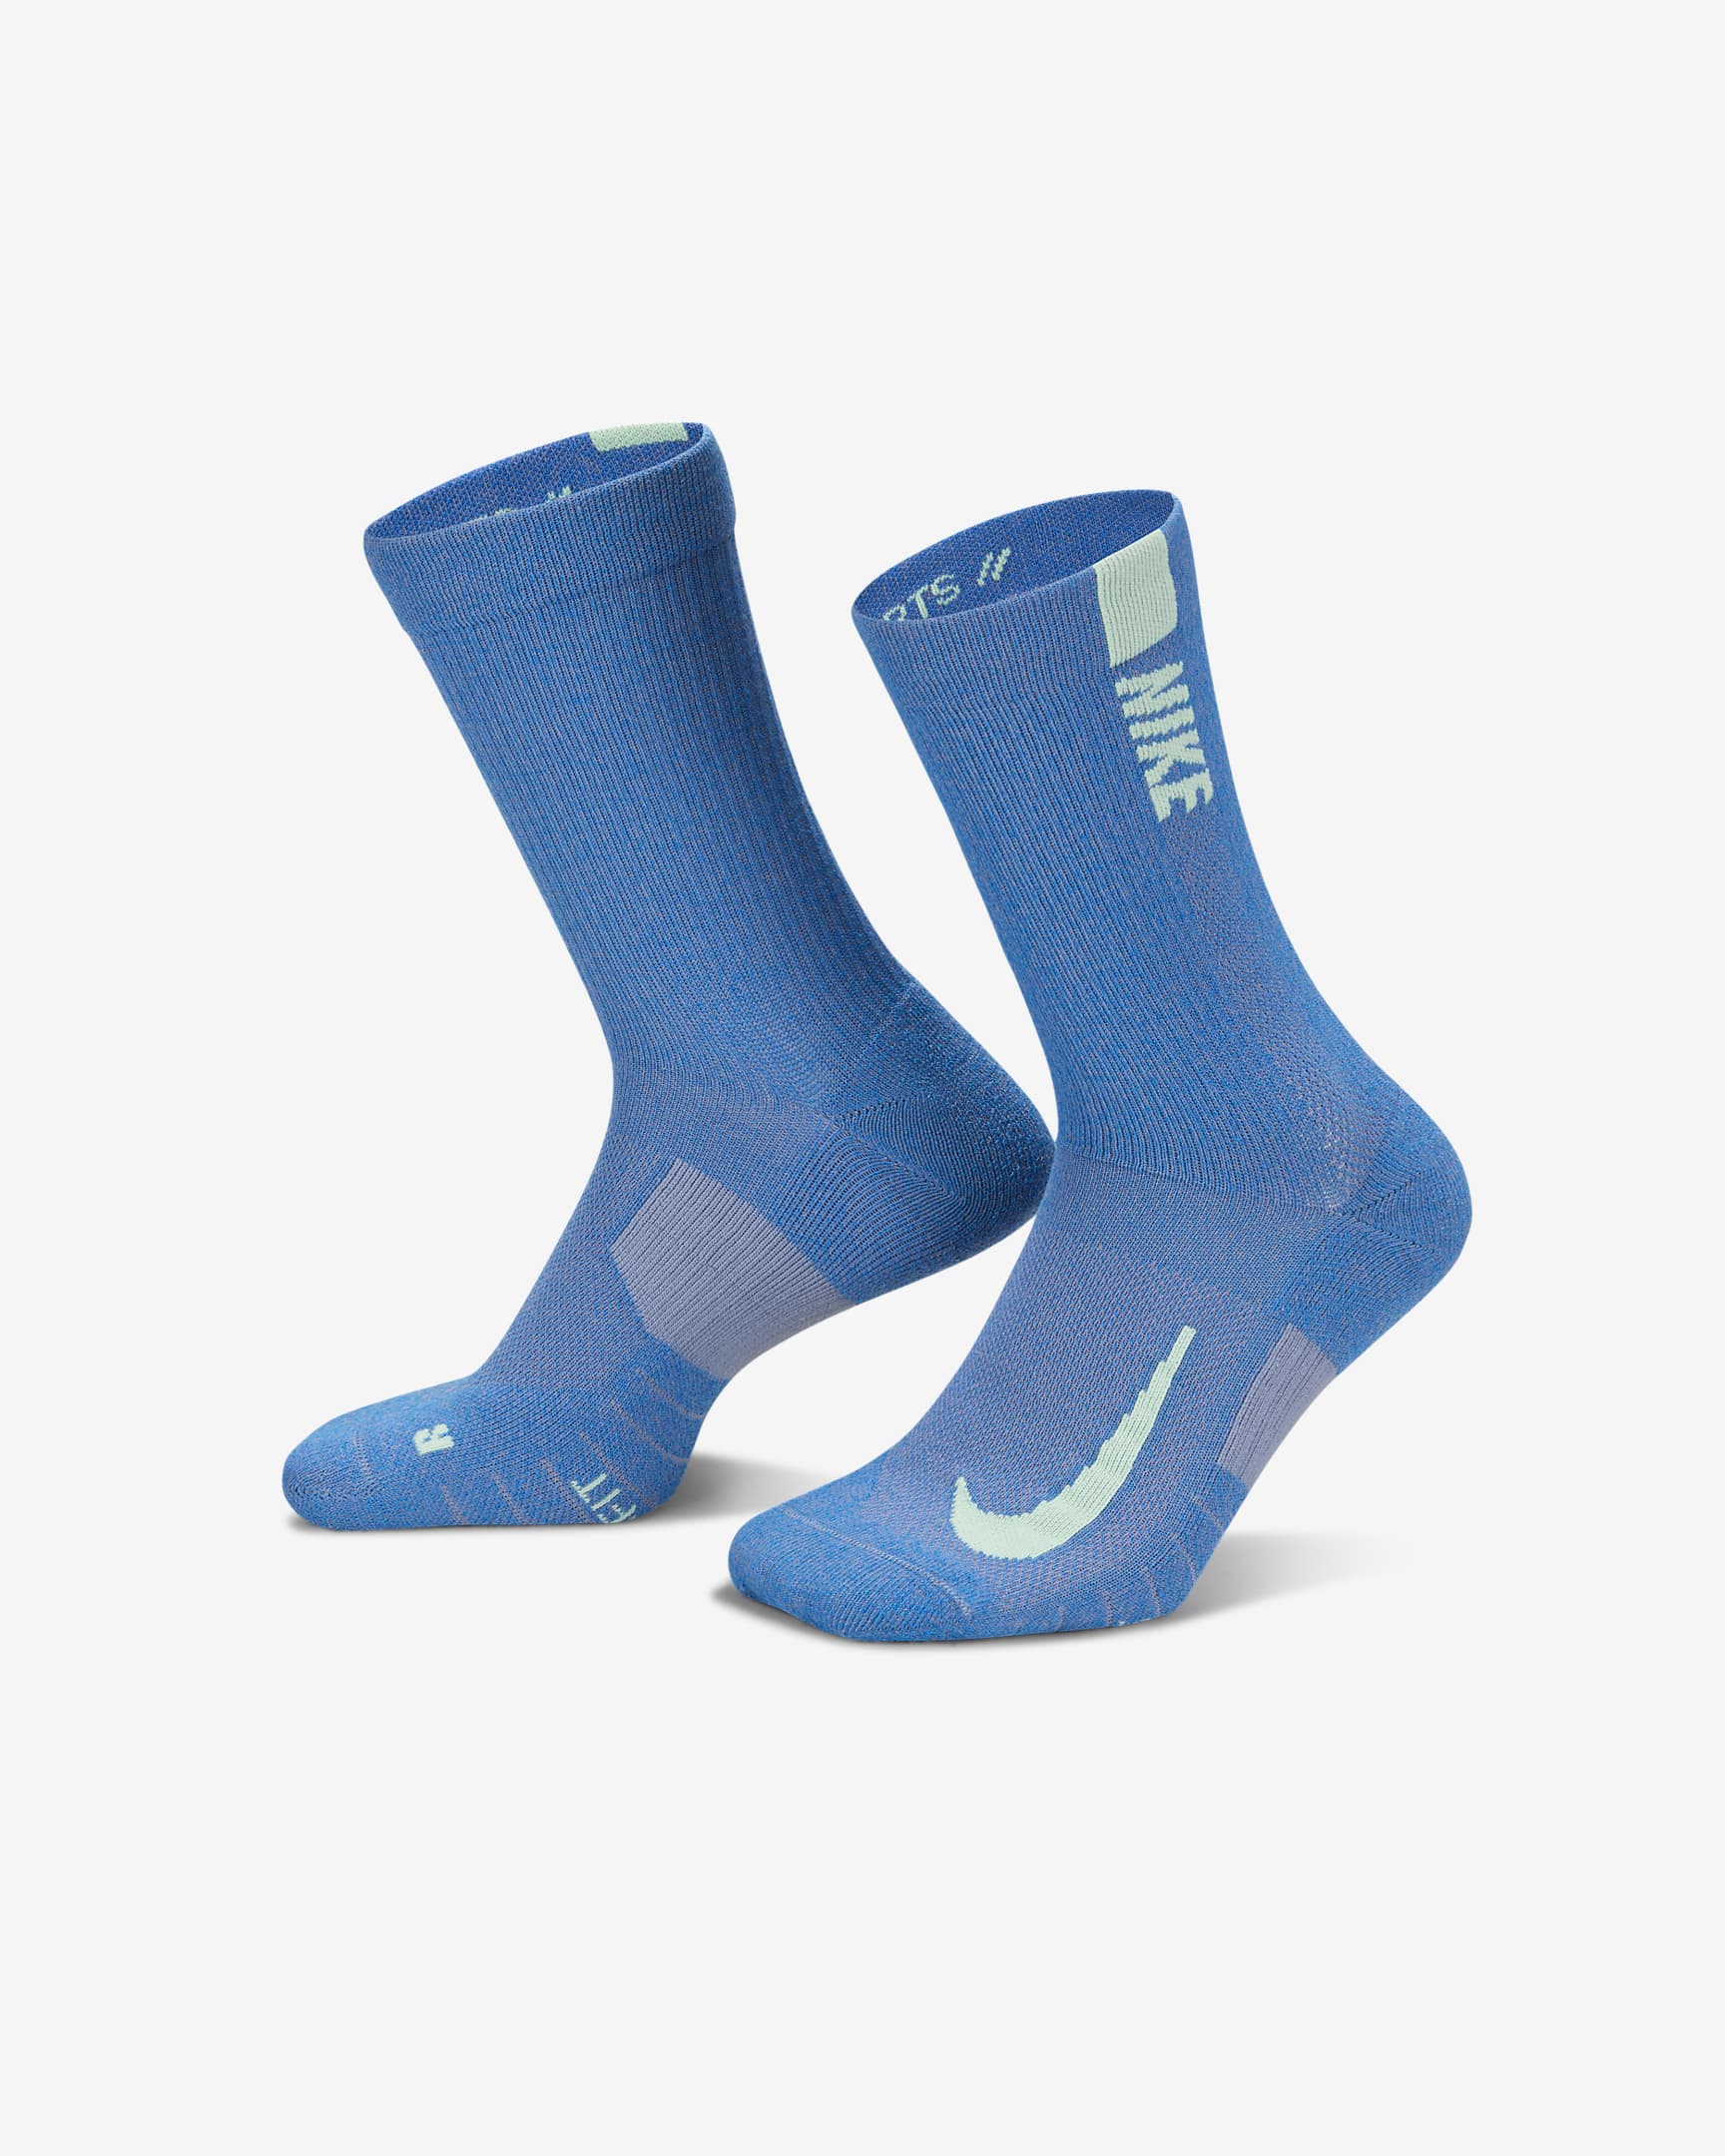 Chaussettes mi-mollet Nike Multiplier (2 paires) - Multicolore